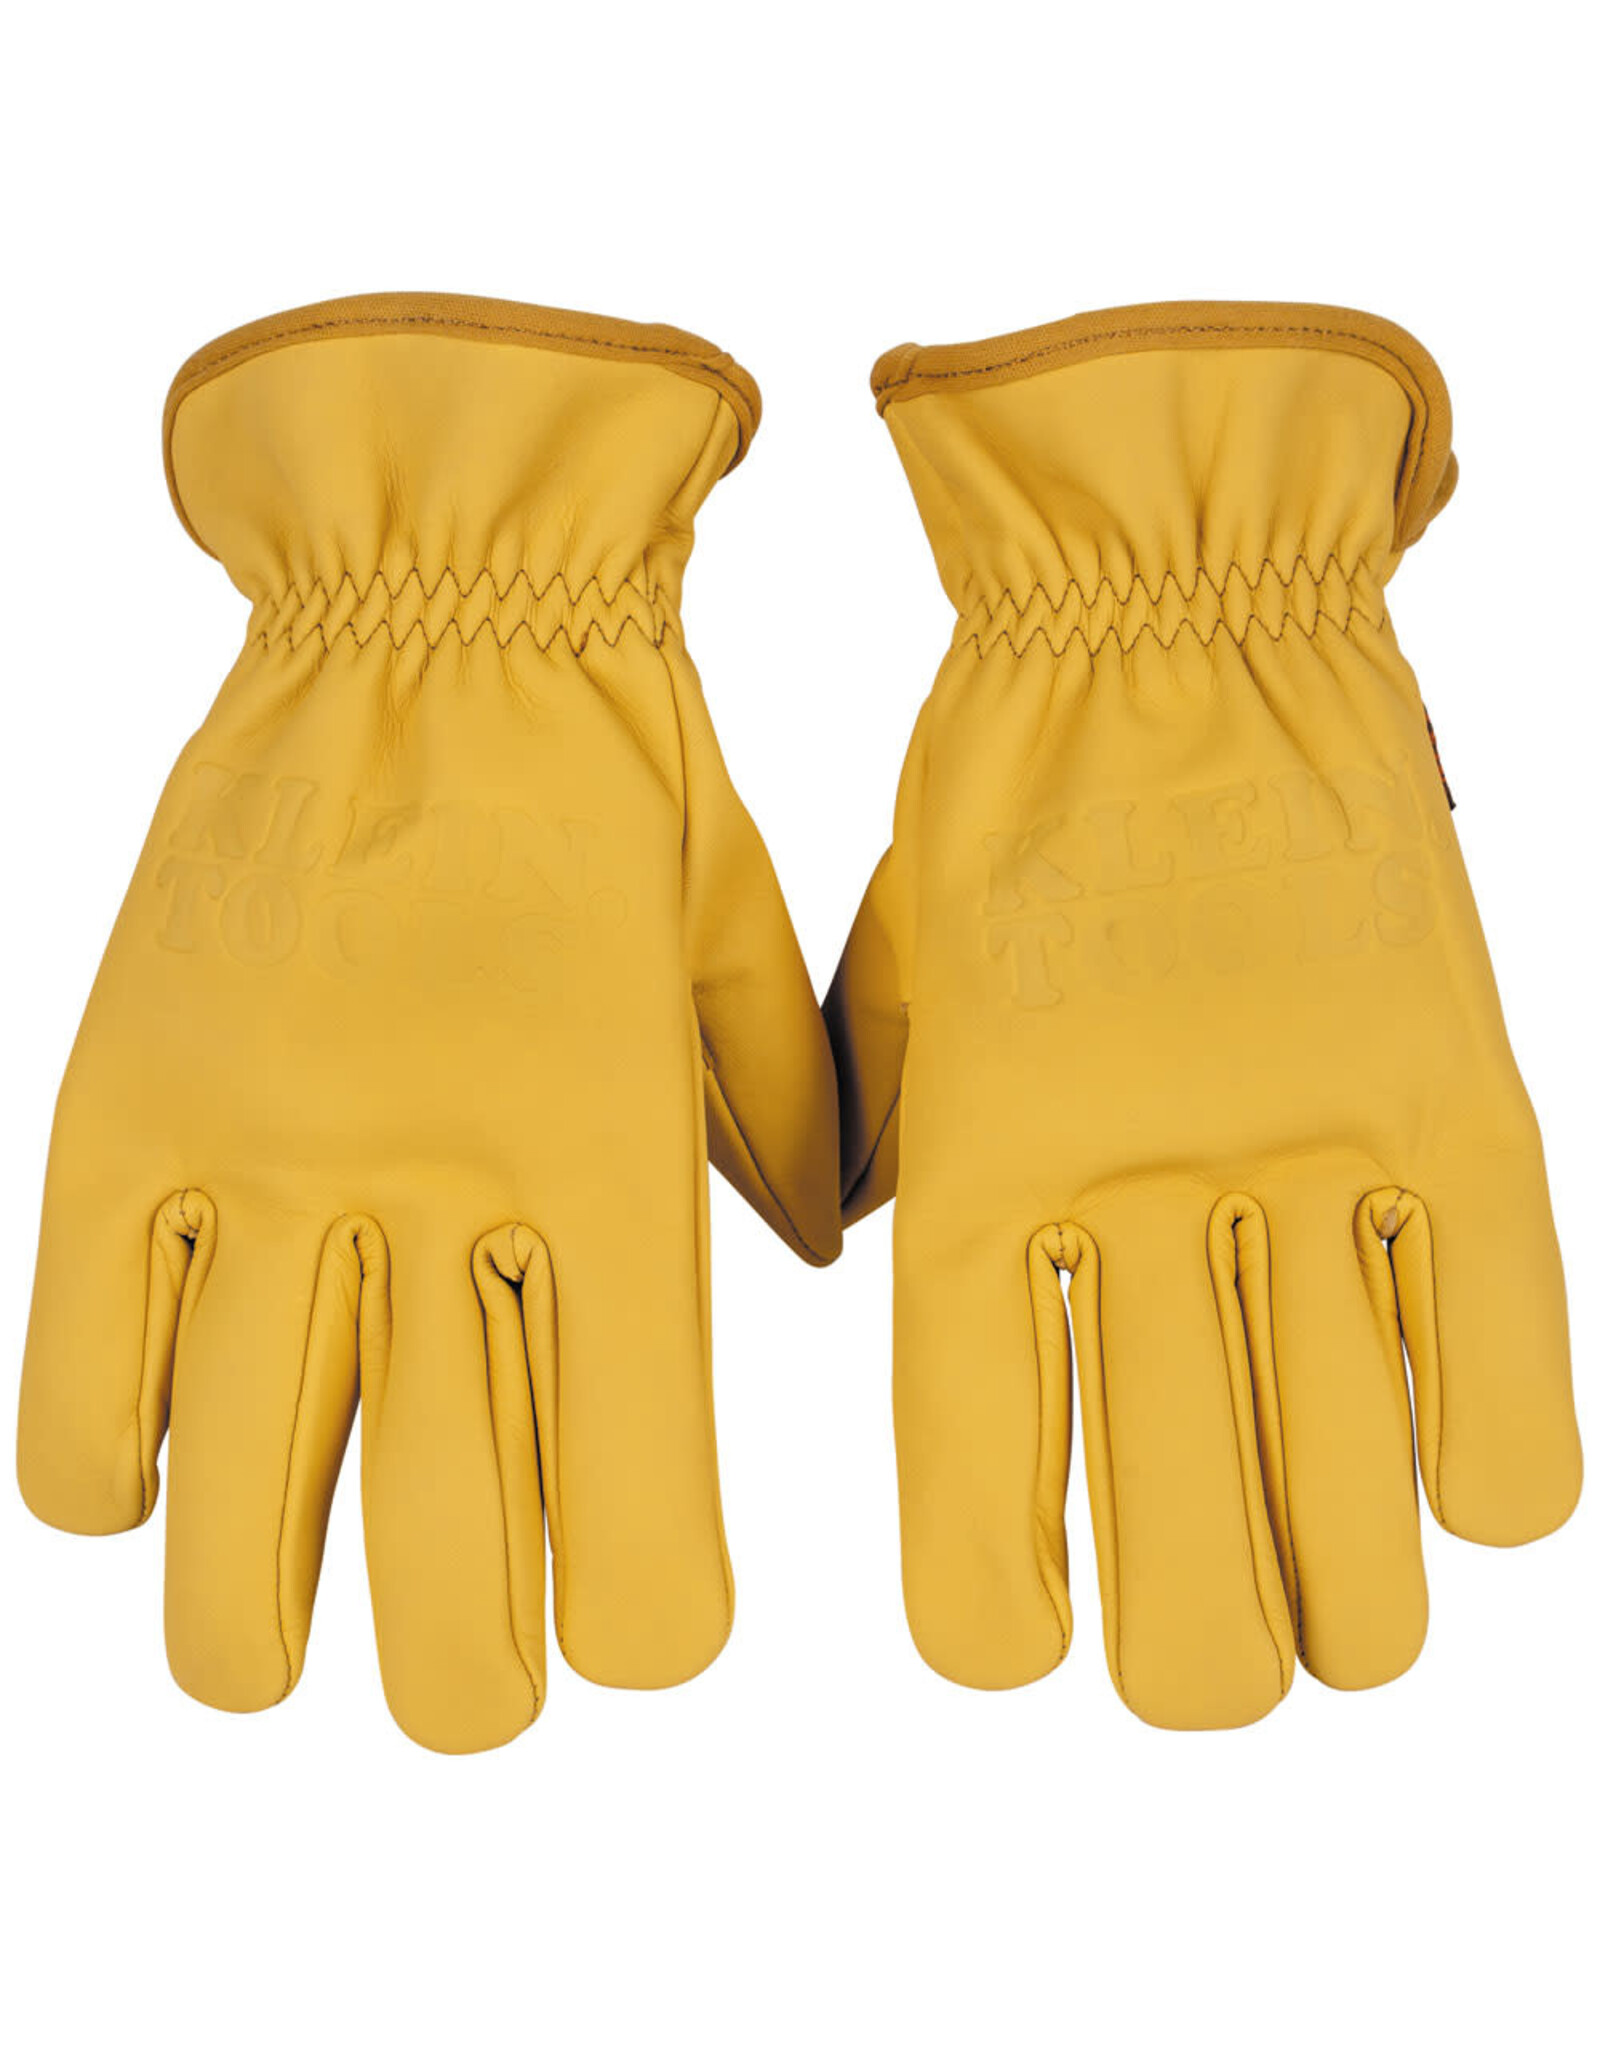 Klein Tools Cowhide Work Gloves, Large